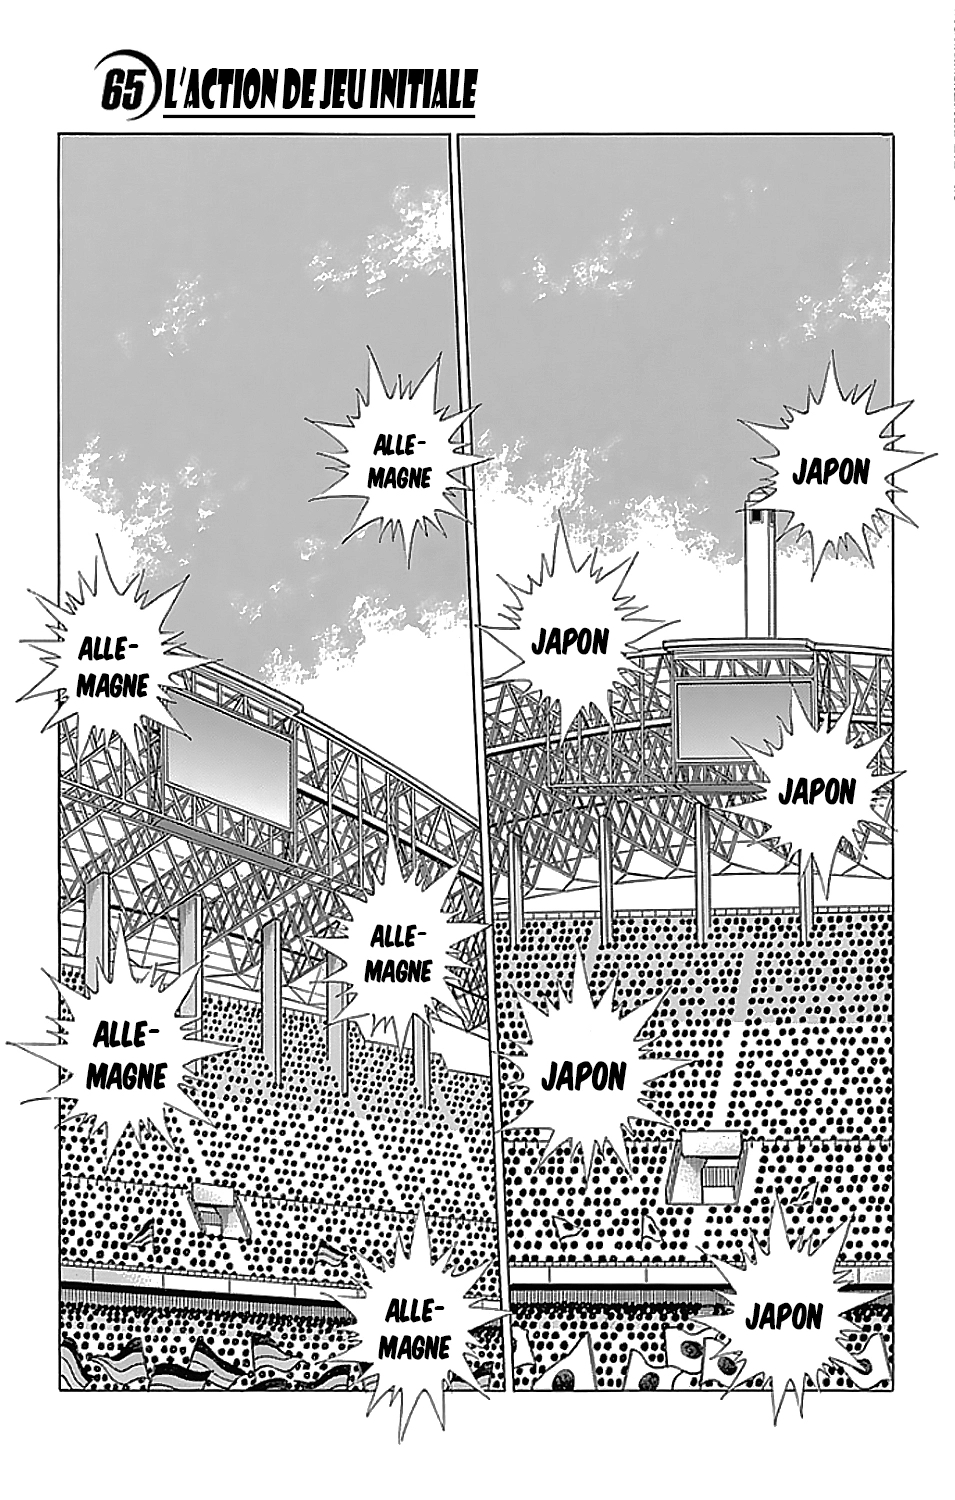 Captain Tsubasa - Rising Sun: Chapter 65 - Page 1